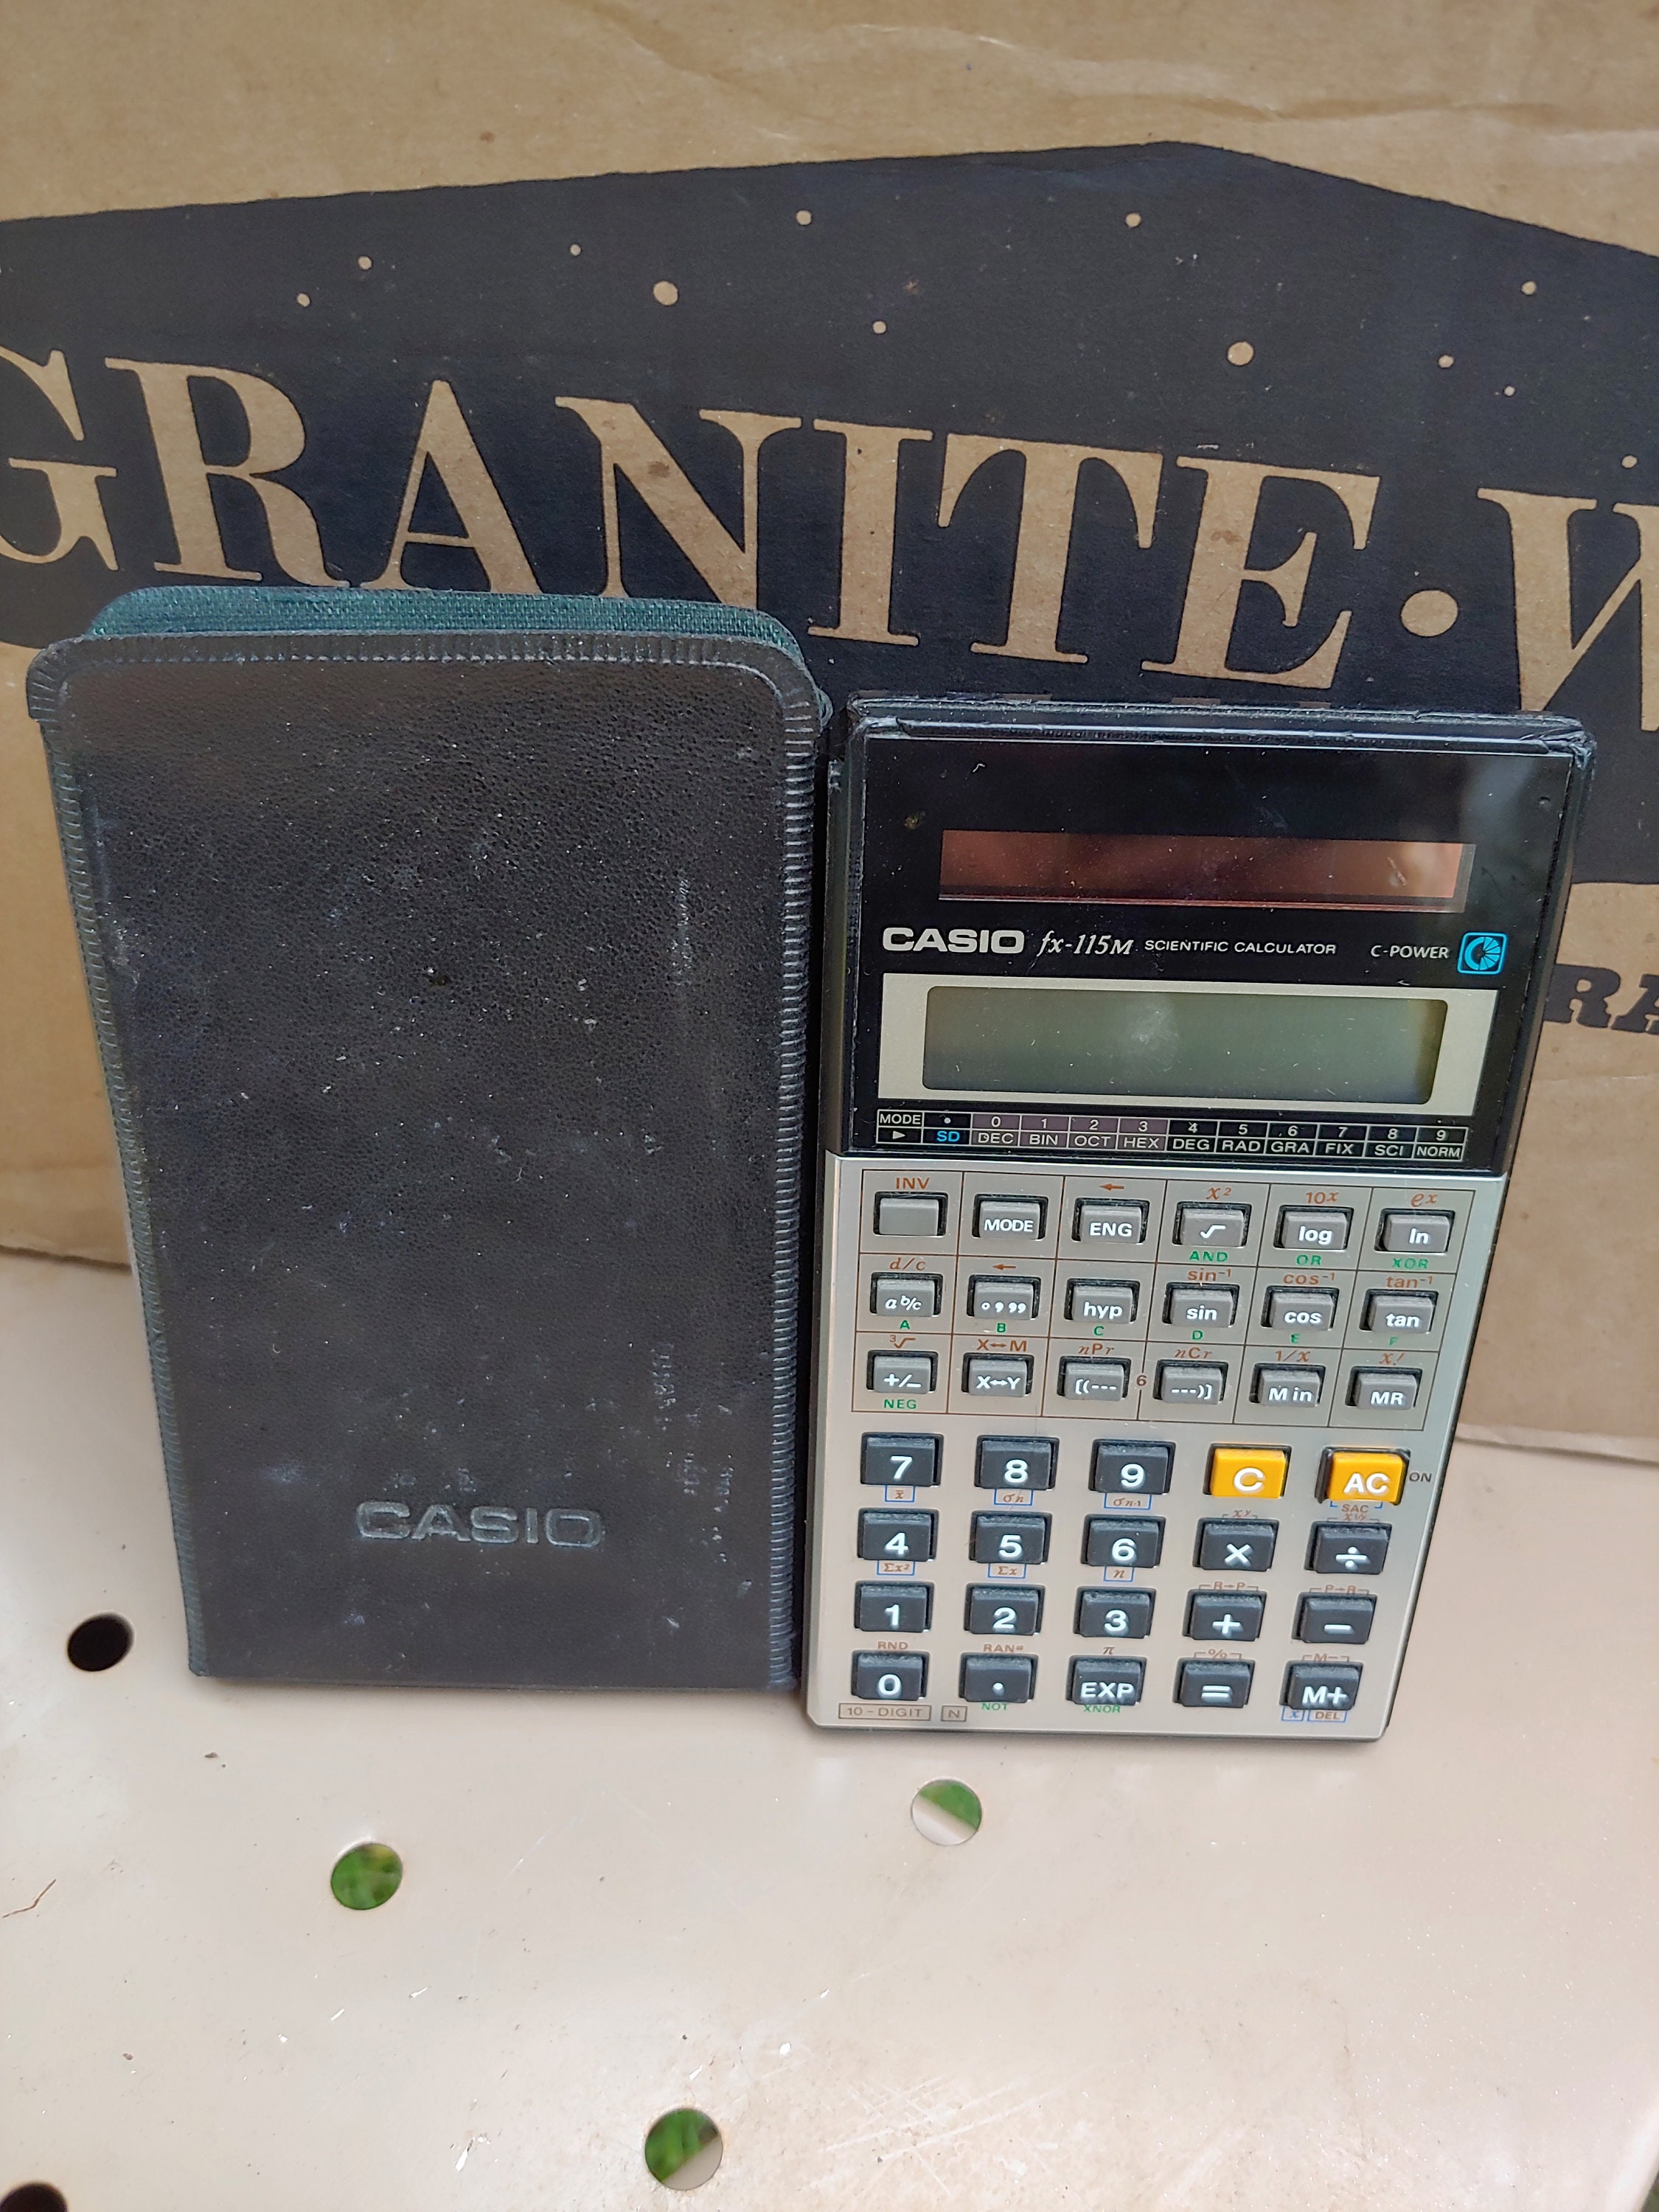 Casio fx-330 scientific calculator (1980) - Casio - LastDodo